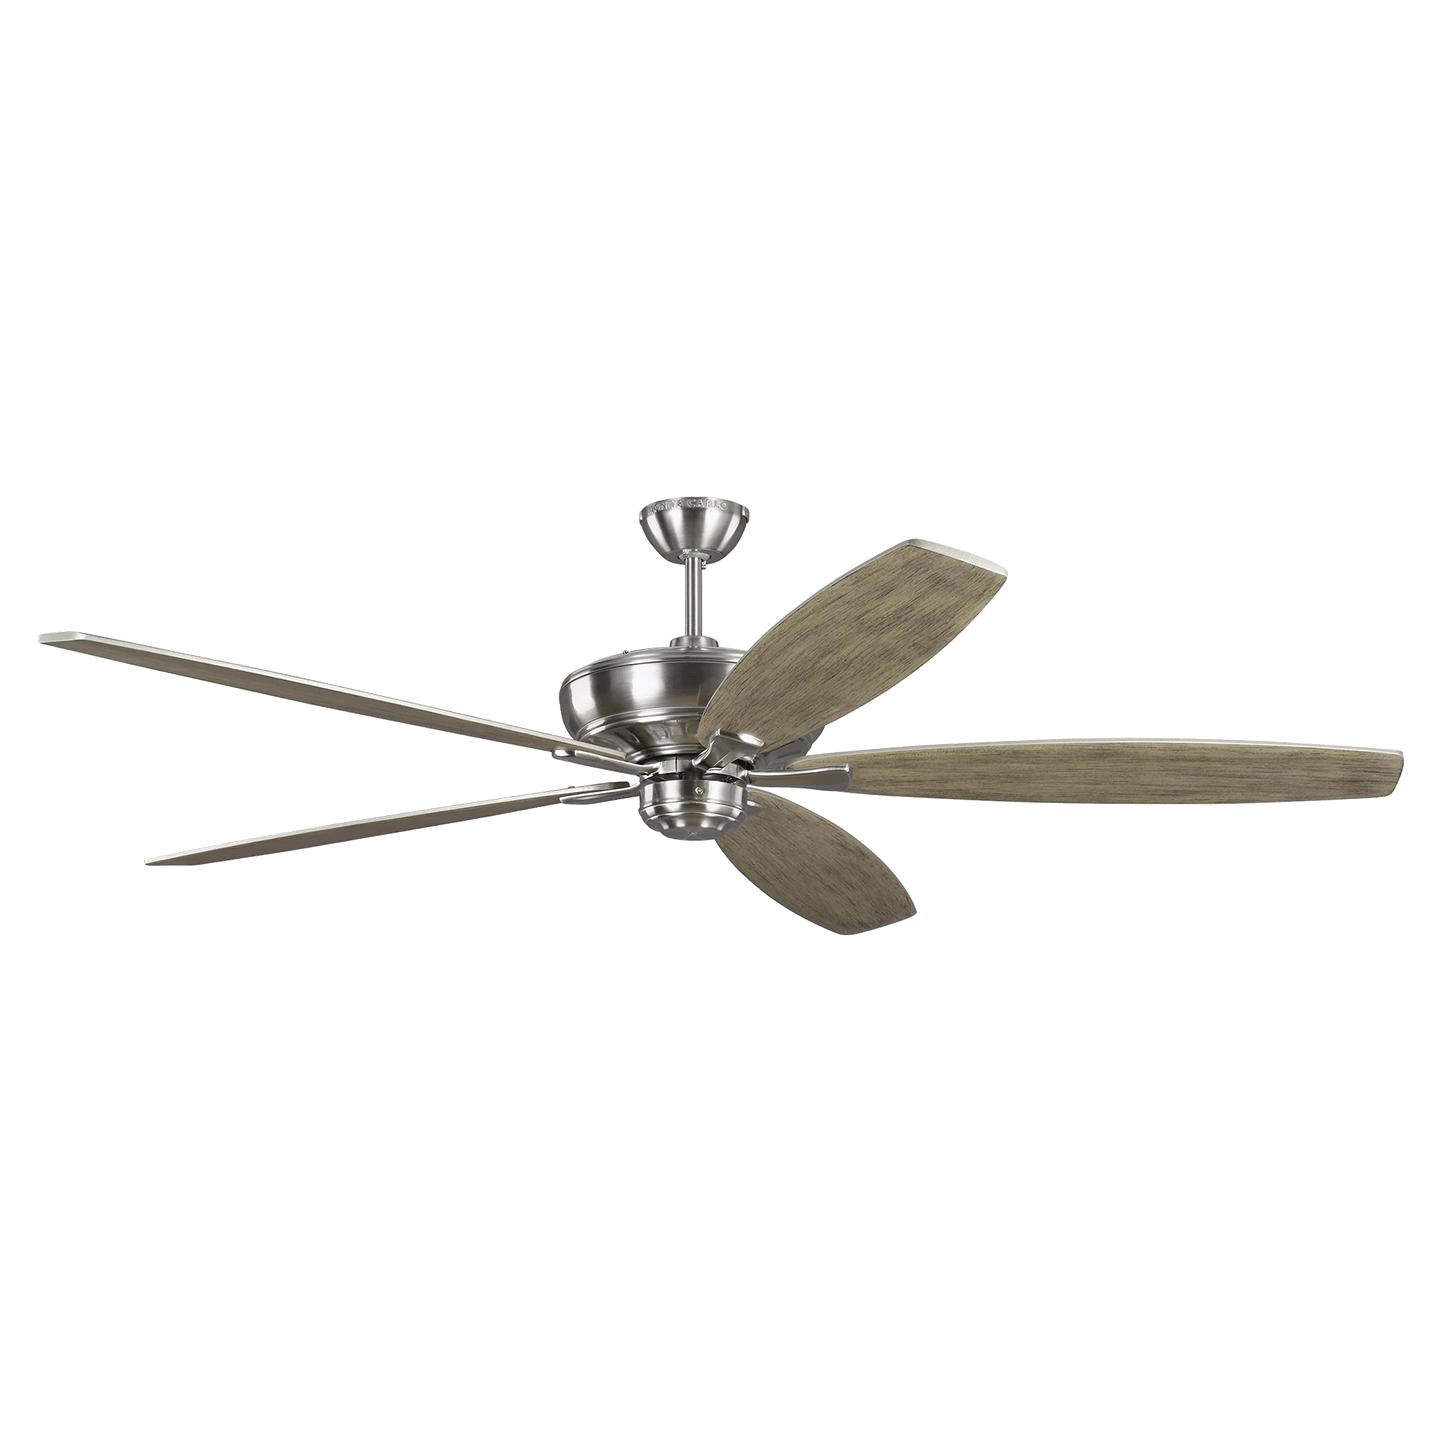 Купить Потолочный вентилятор Dover 68" Ceiling Fan в интернет-магазине roooms.ru